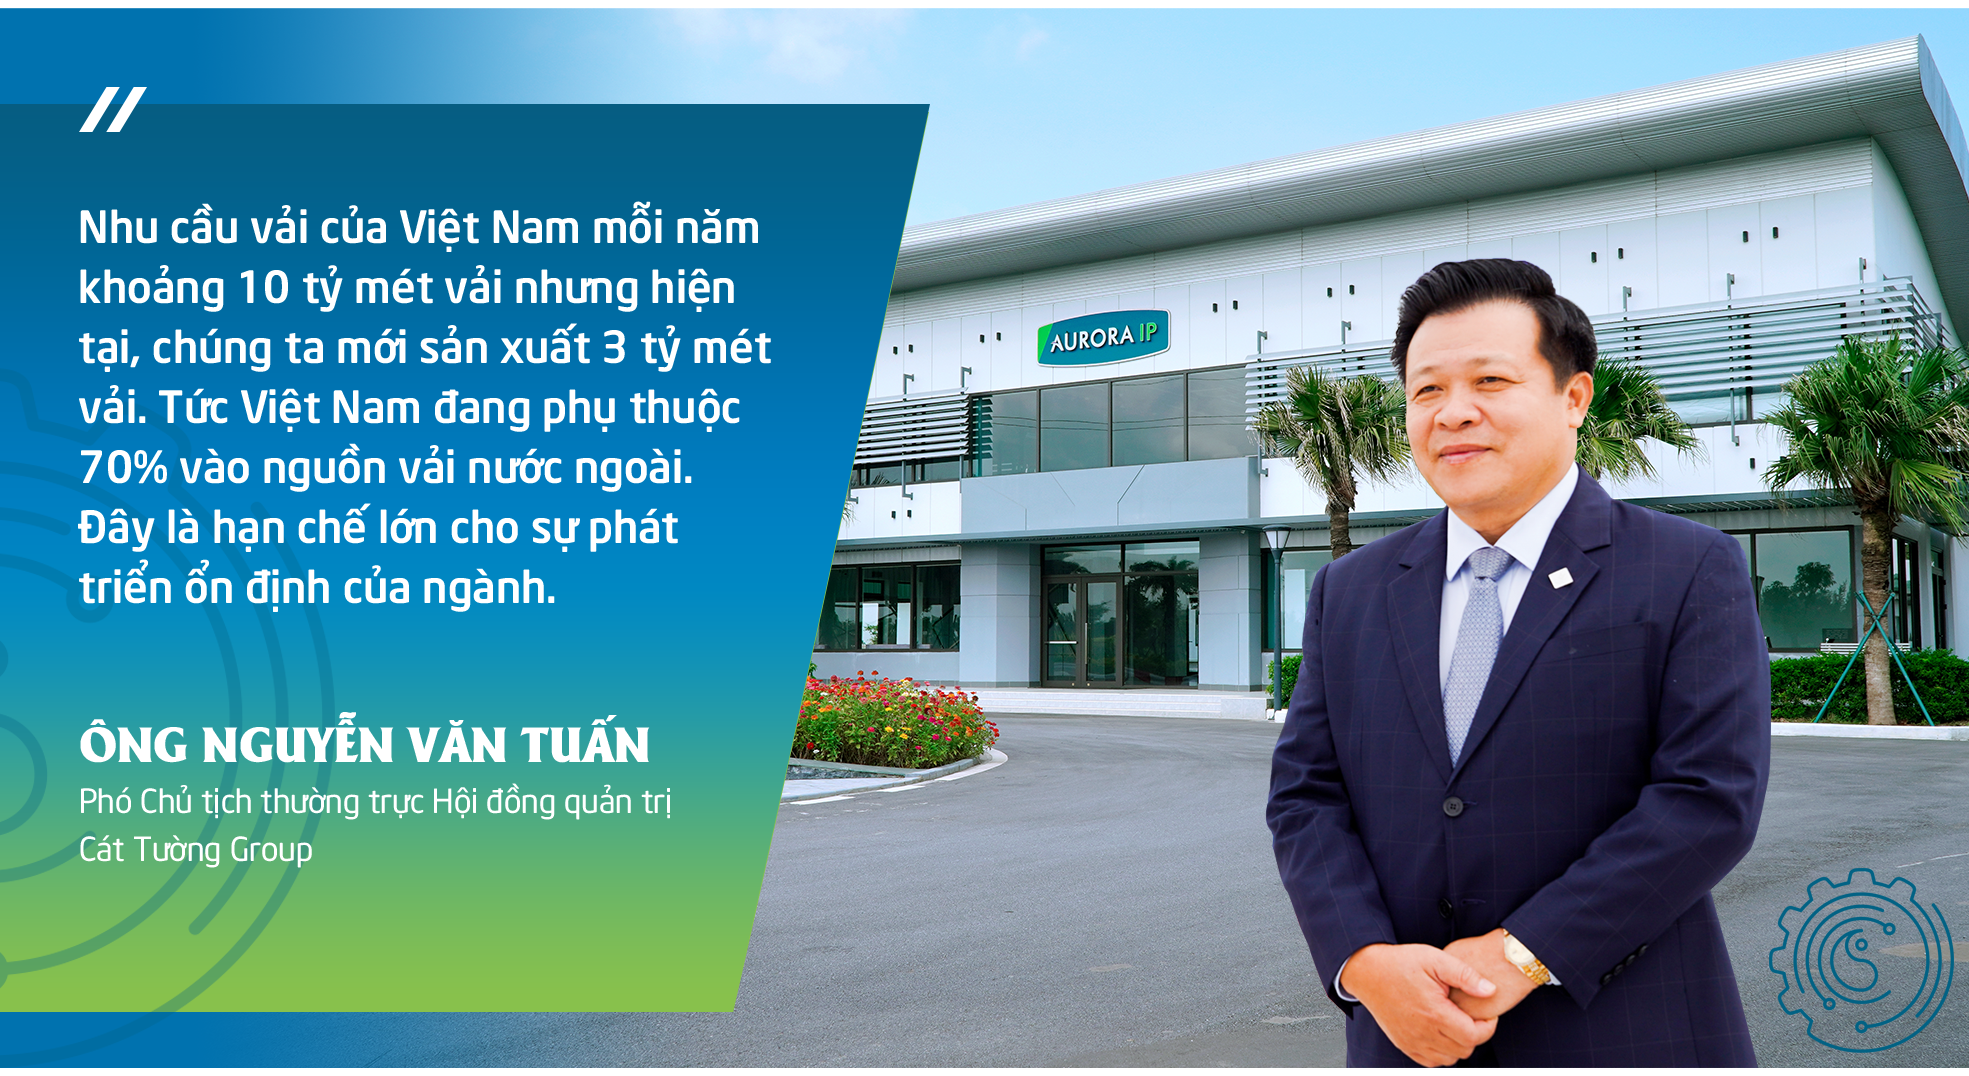 Giải bài toán đầu vào của ngành dệt may Việt Nam: Nhìn từ định hướng chiến lược phát triển Khu công nghiệp Aurora IP tỉnh Nam Định - Ảnh 4.